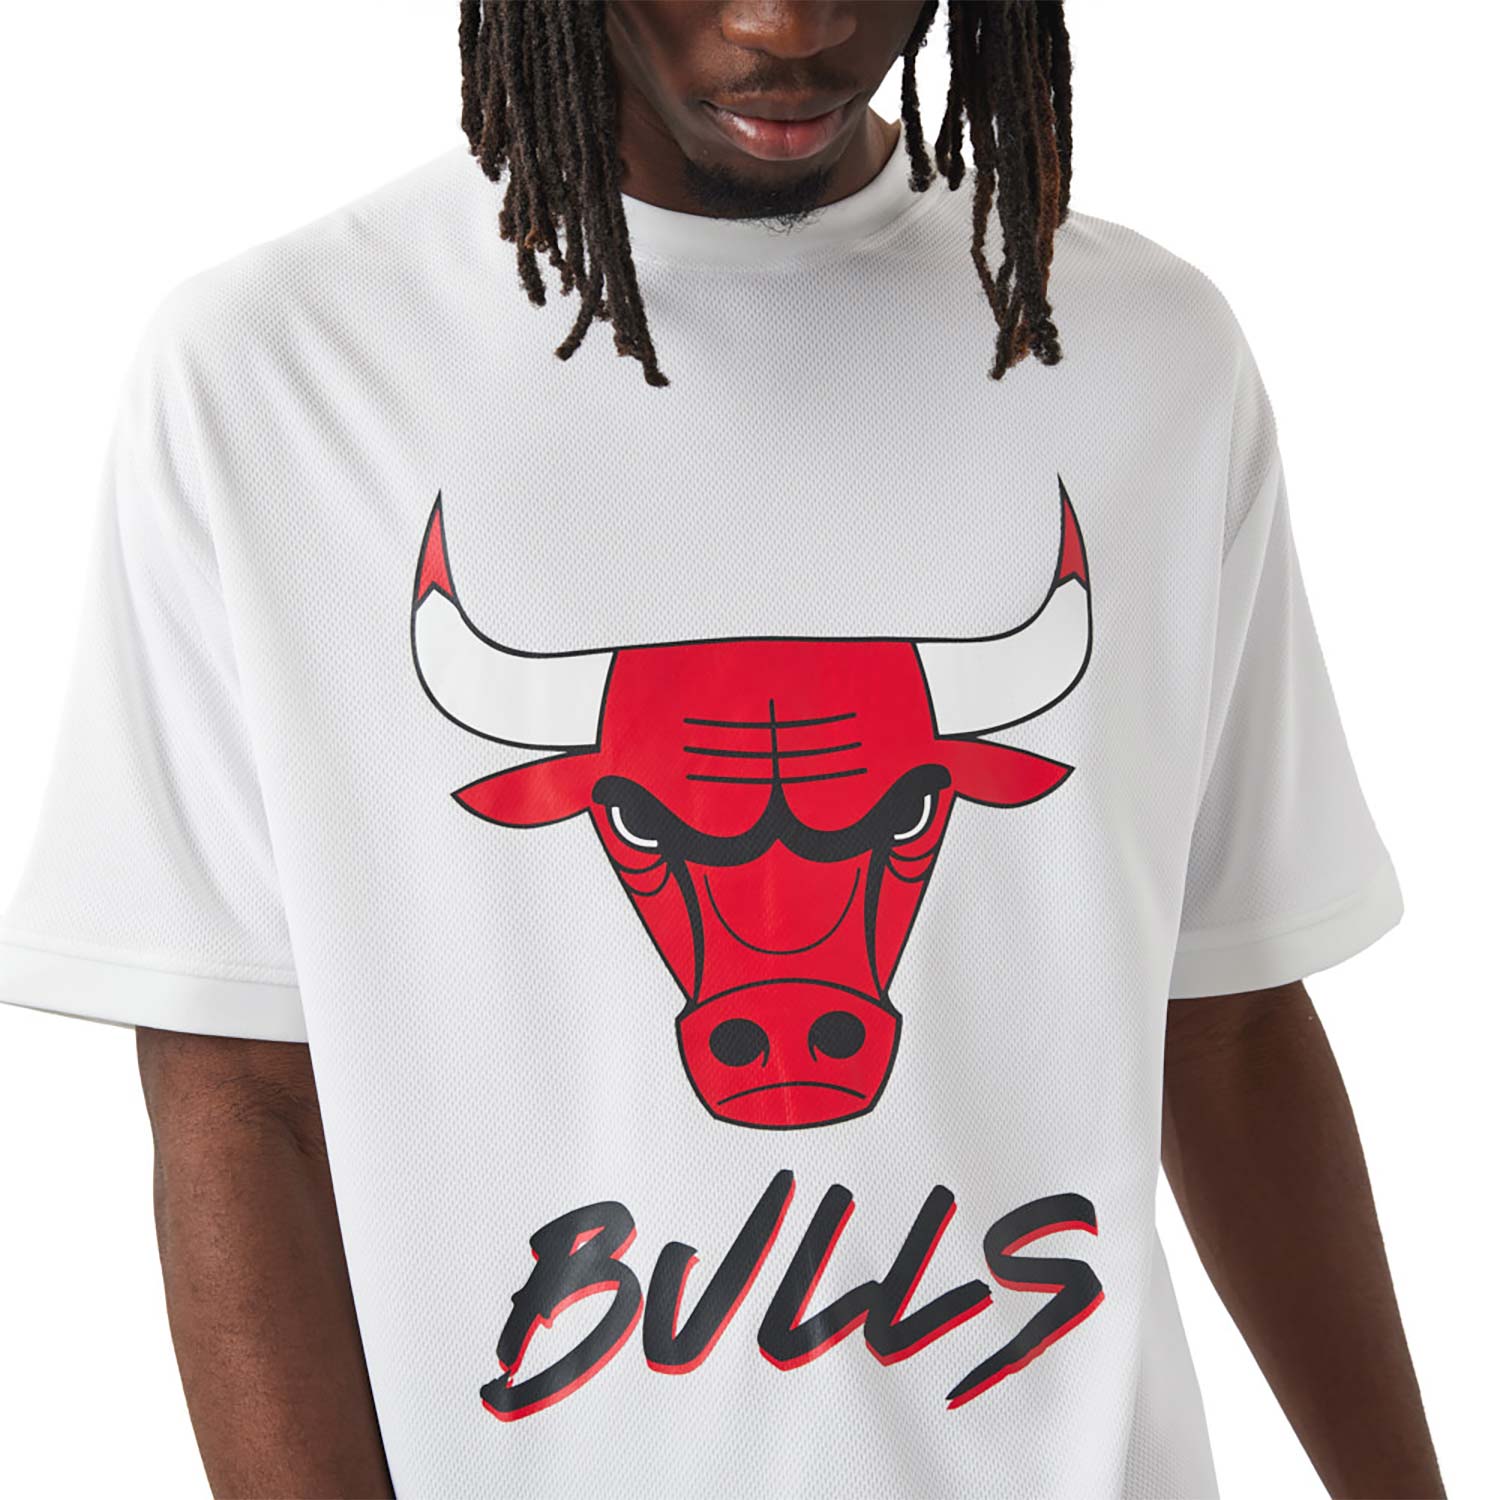 Chicago Bulls NBA Script White T-Shirt